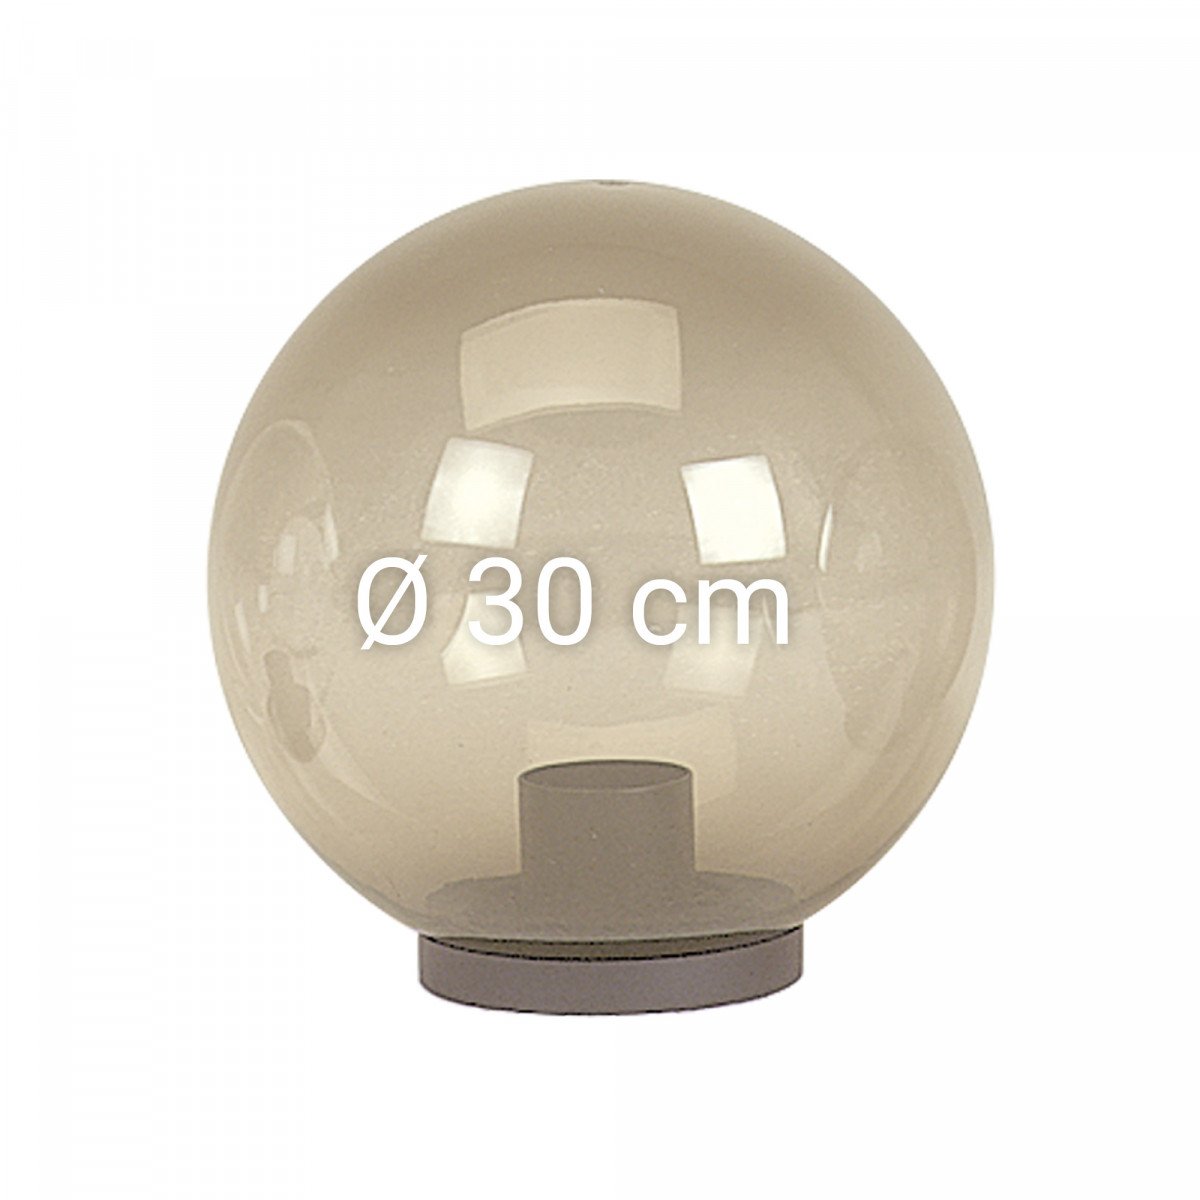  Globe transparent fumé de 30 cm de diamètre avec collerette (3713) de KS Lighting 